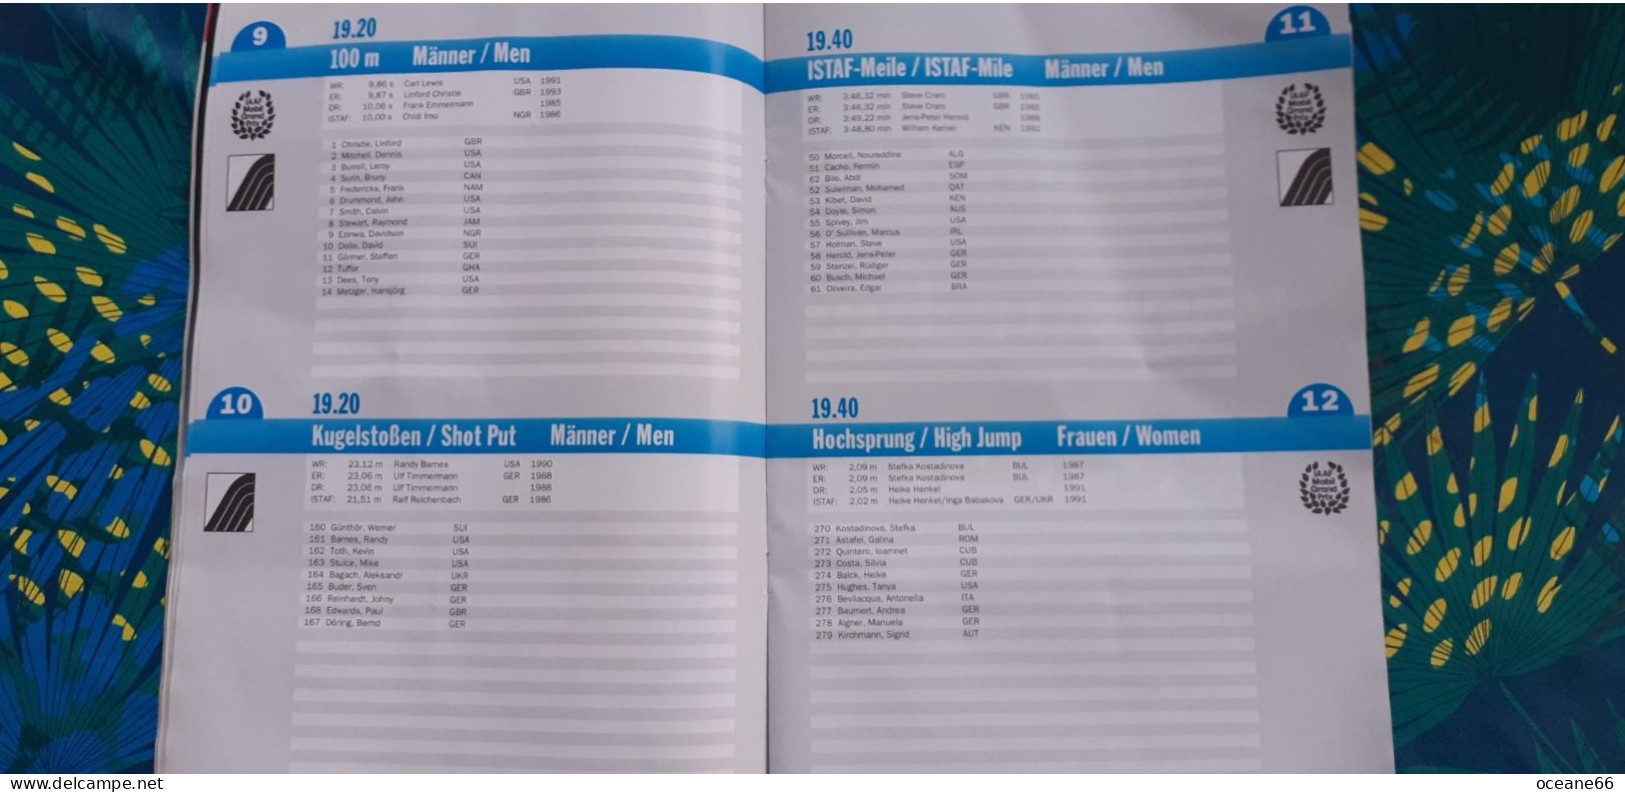 Istaf 93 Das Offizielle Programmheft Meeting De Berlin 1993 52 Pages Avec Liste Des Engagés Athlétisme - Leichtathletik